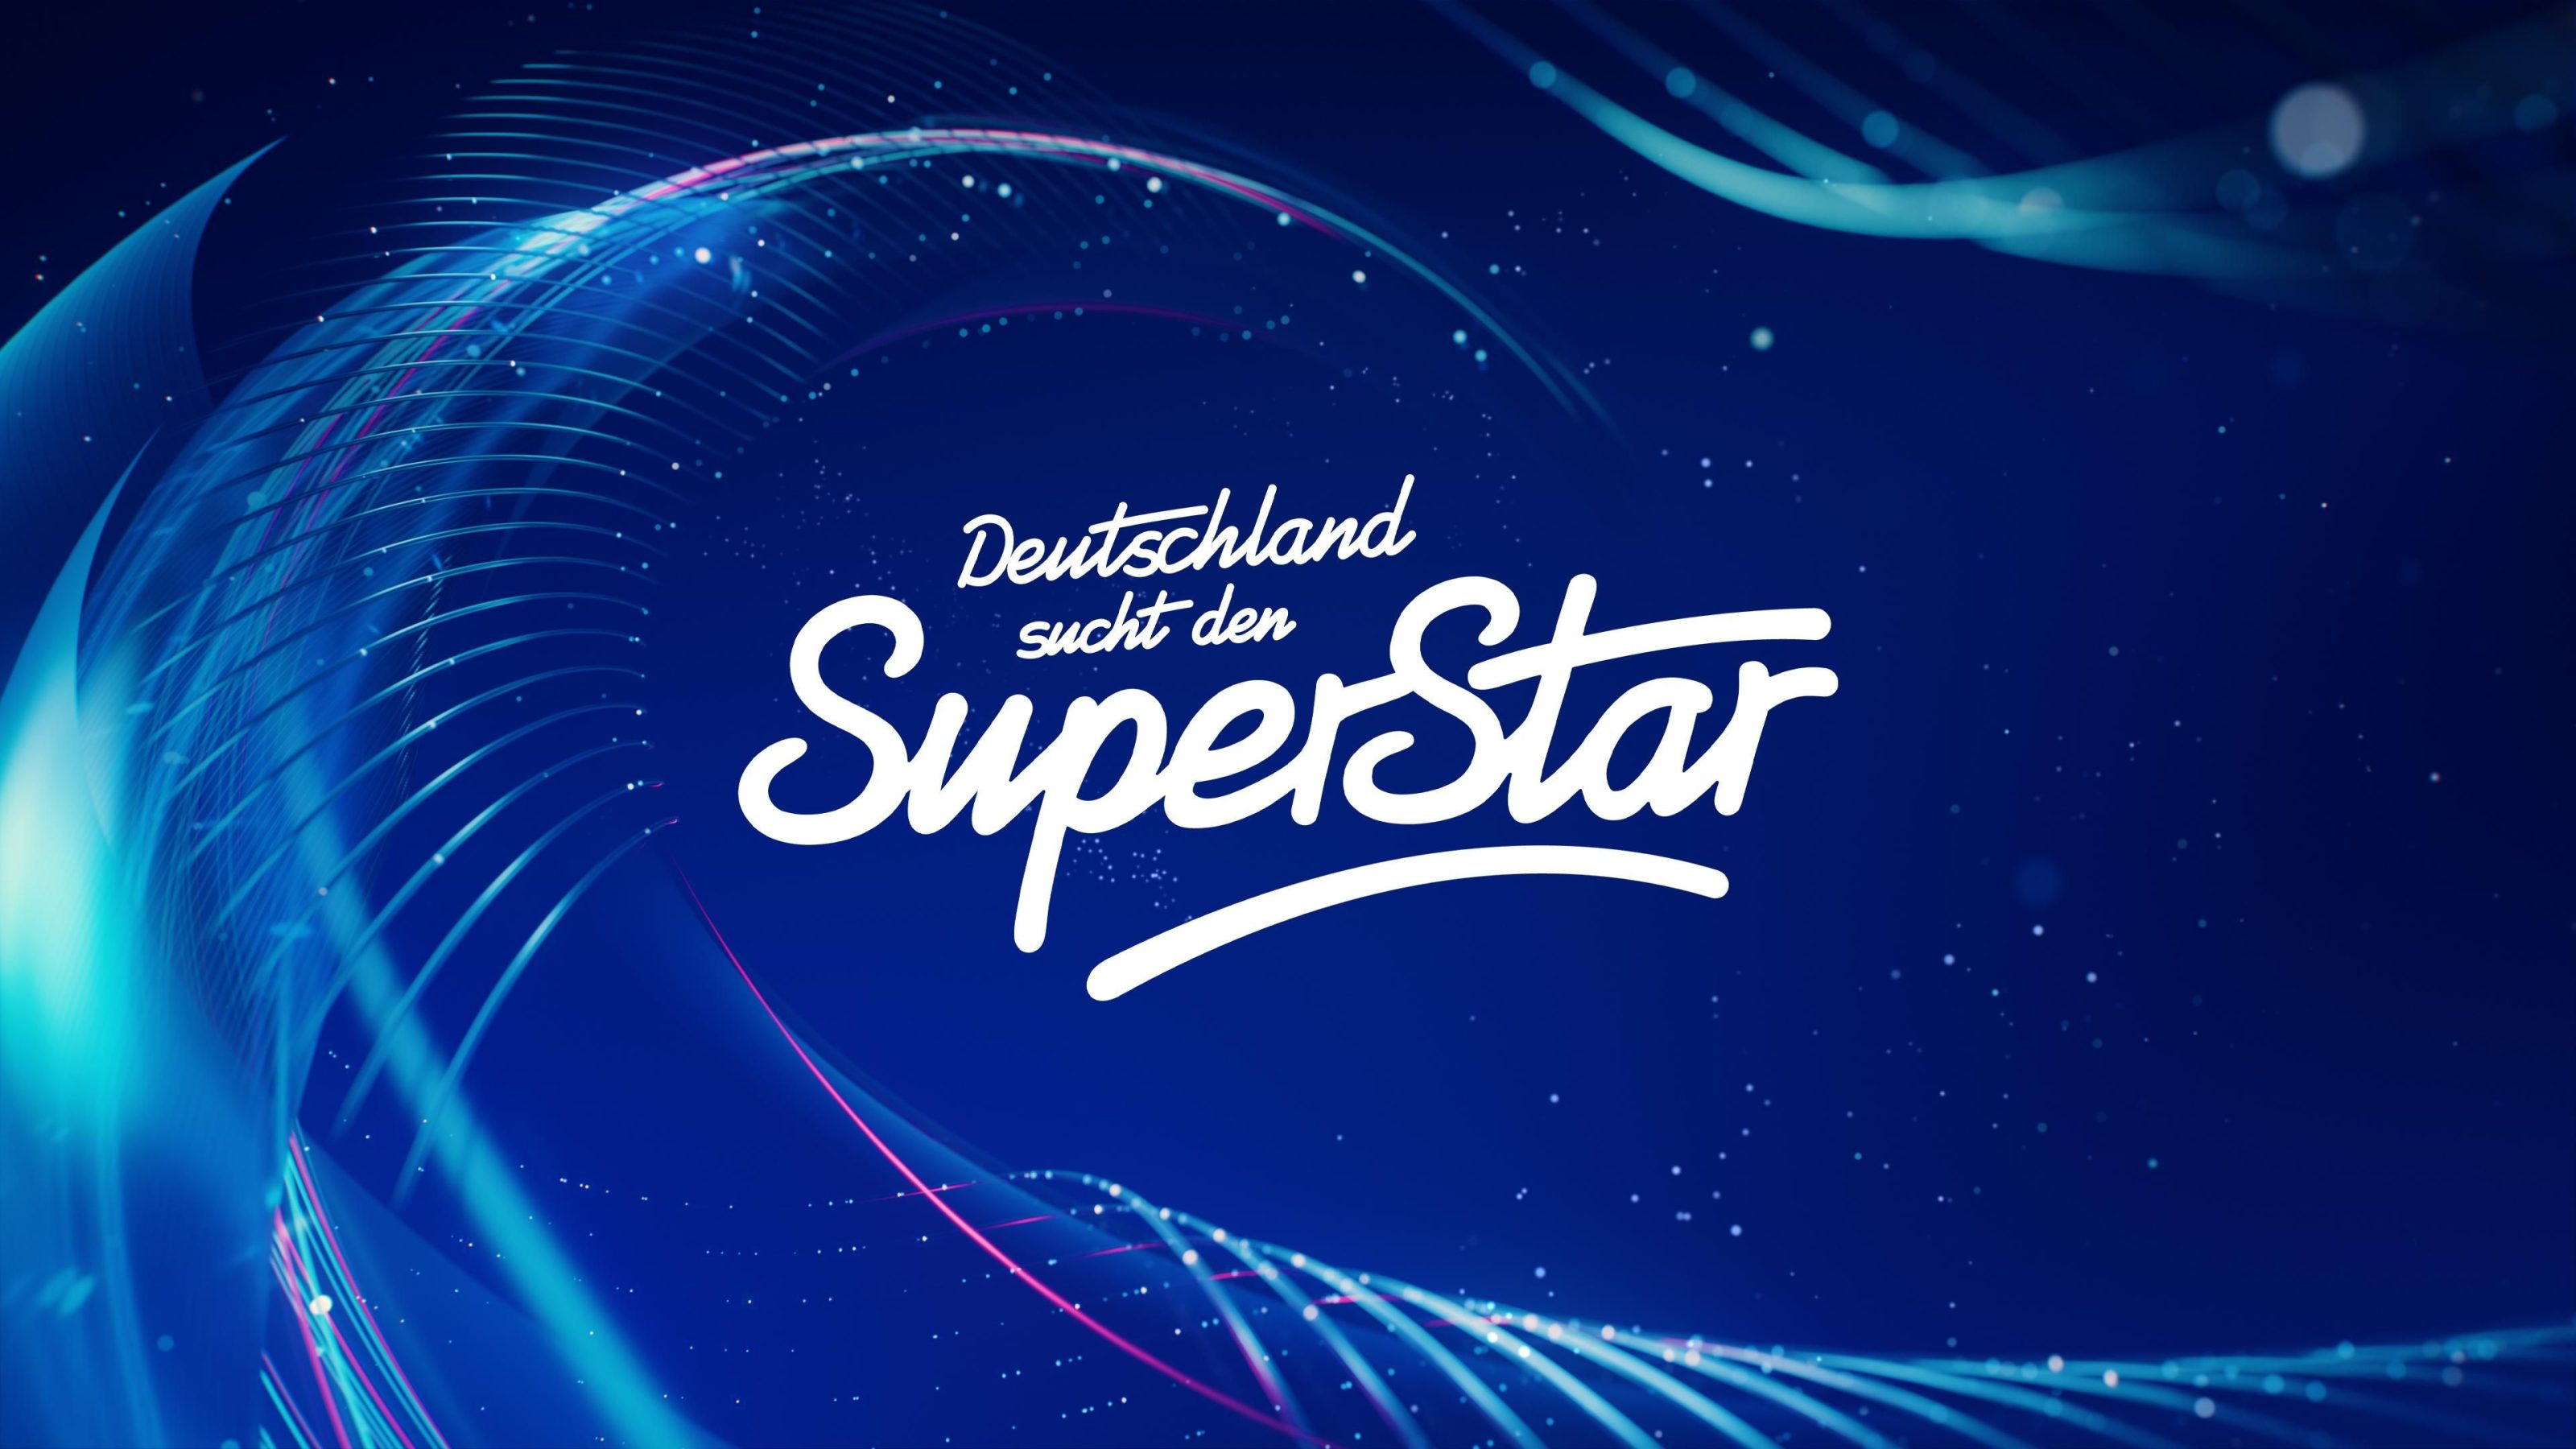 Deuschland sucht den Superstar